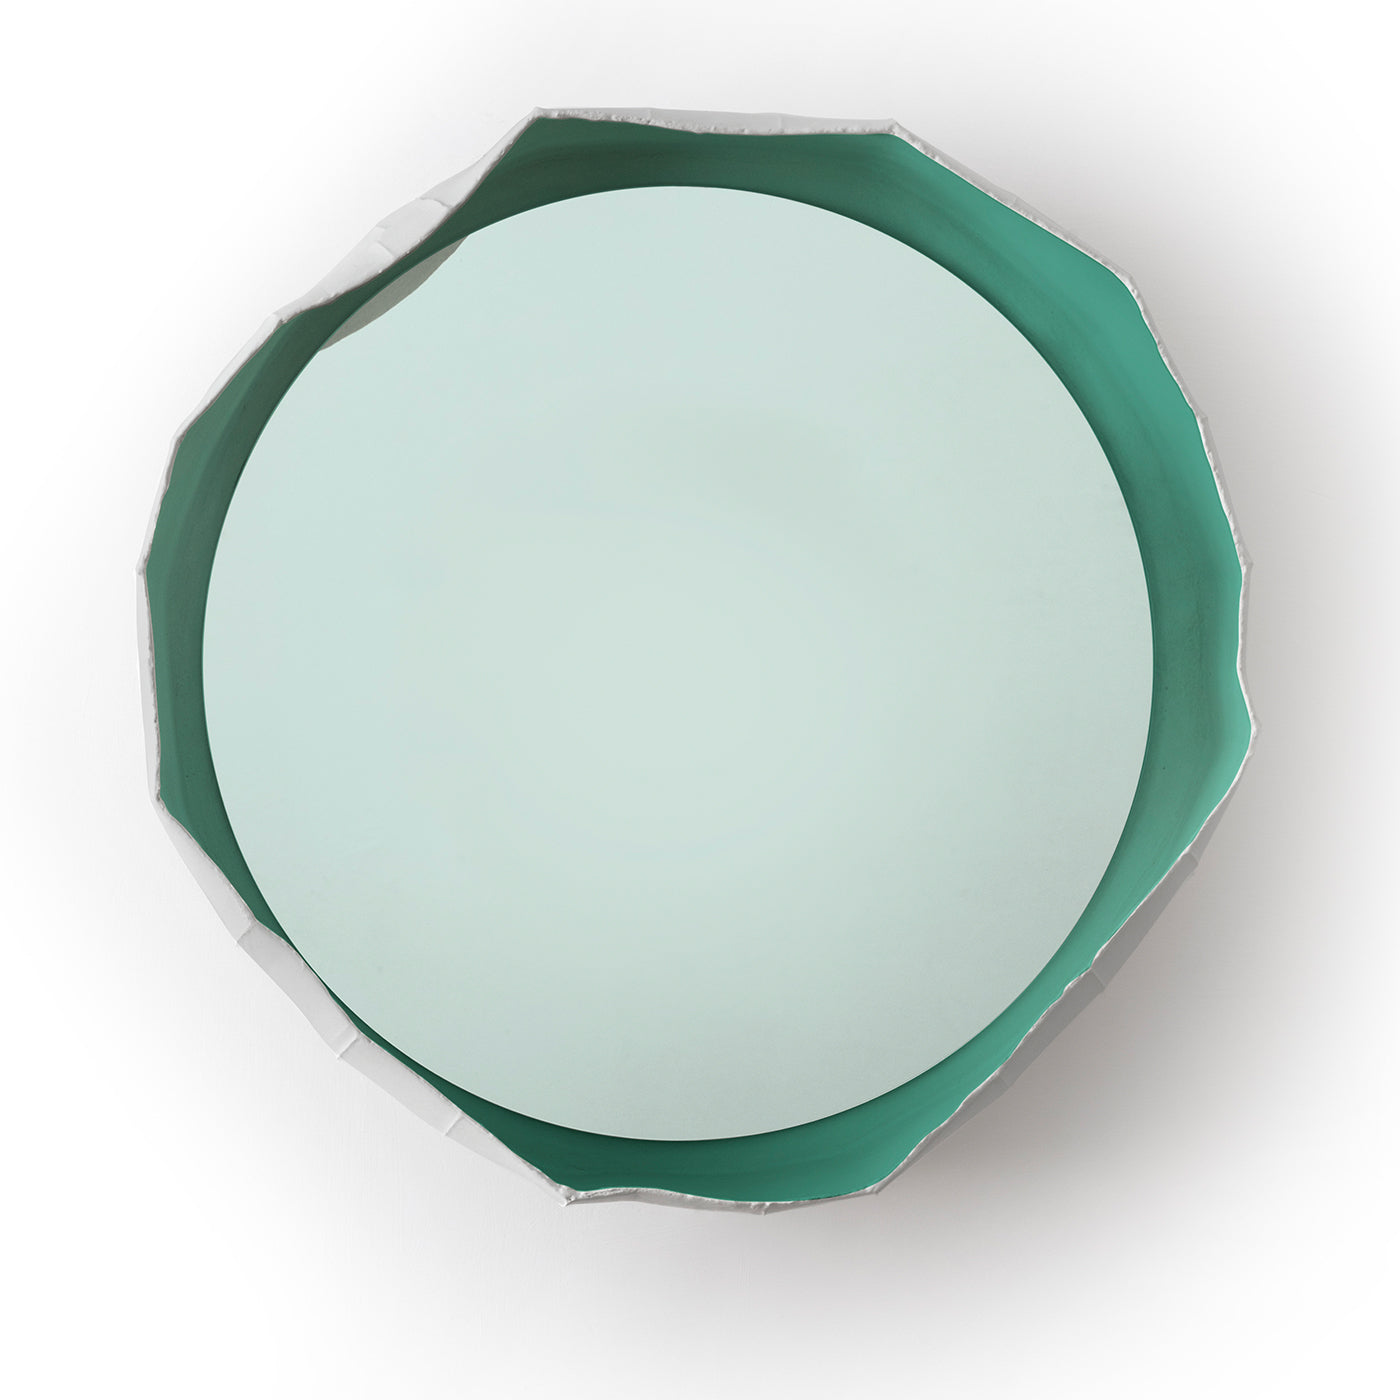 Green Ninfea 50 Mirror By Giovanni Botticelli & Paola Paronetto - Alternative view 1